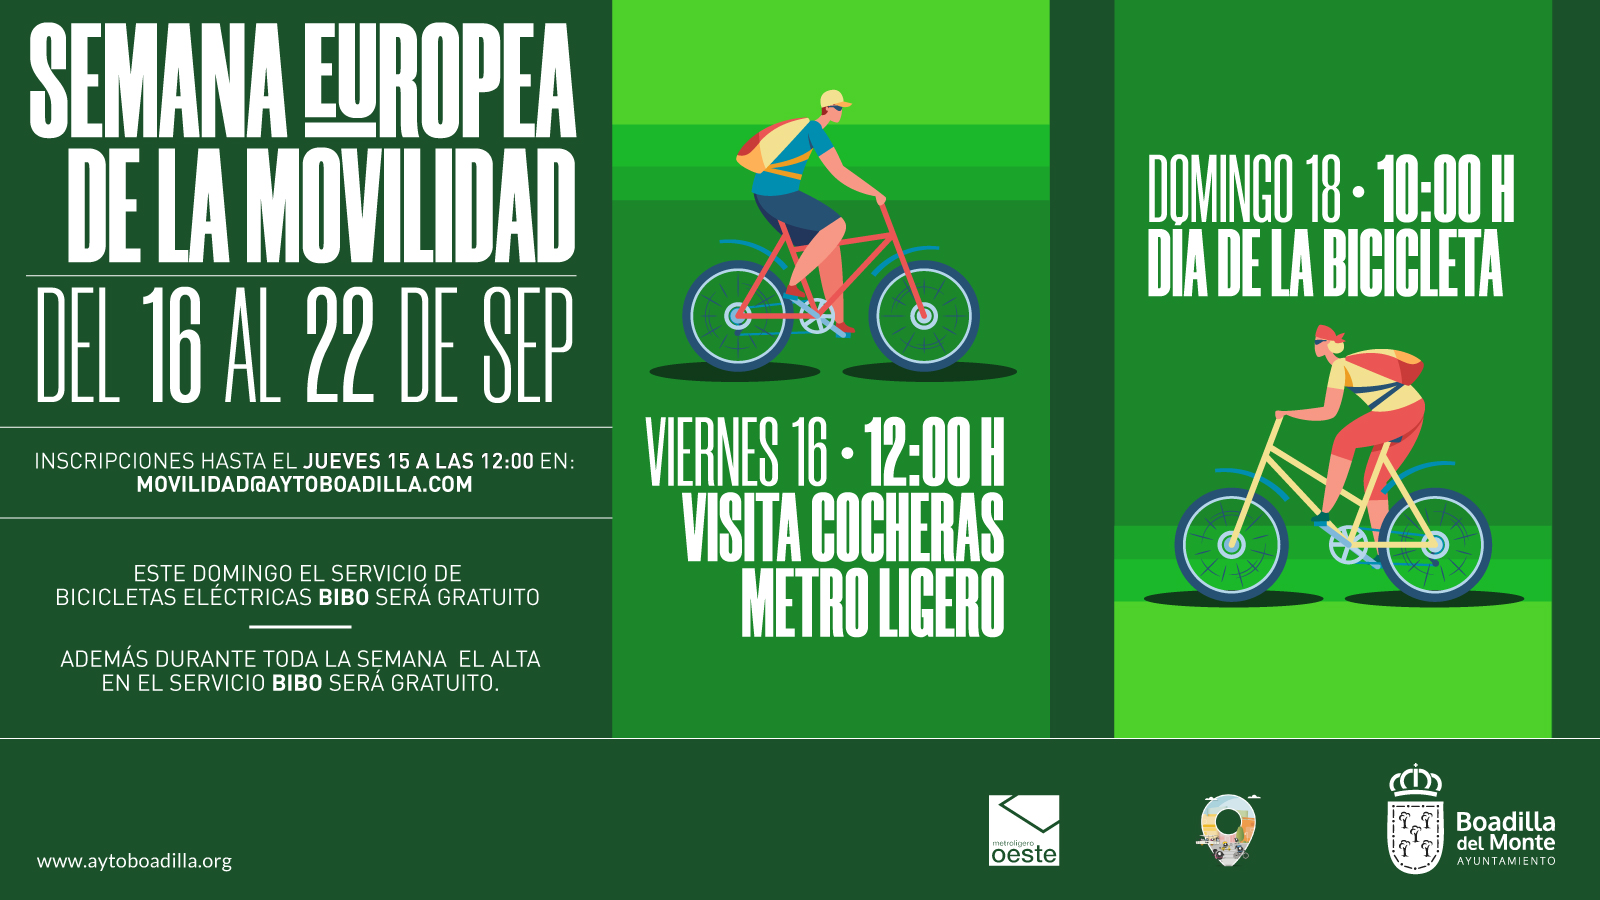 Gracias Convertir flojo El Día de la Bicicleta se celebrará el próximo domingo, en el marco de la  Semana Europea de la Movilidad | Ayuntamiento de Boadilla del Monte